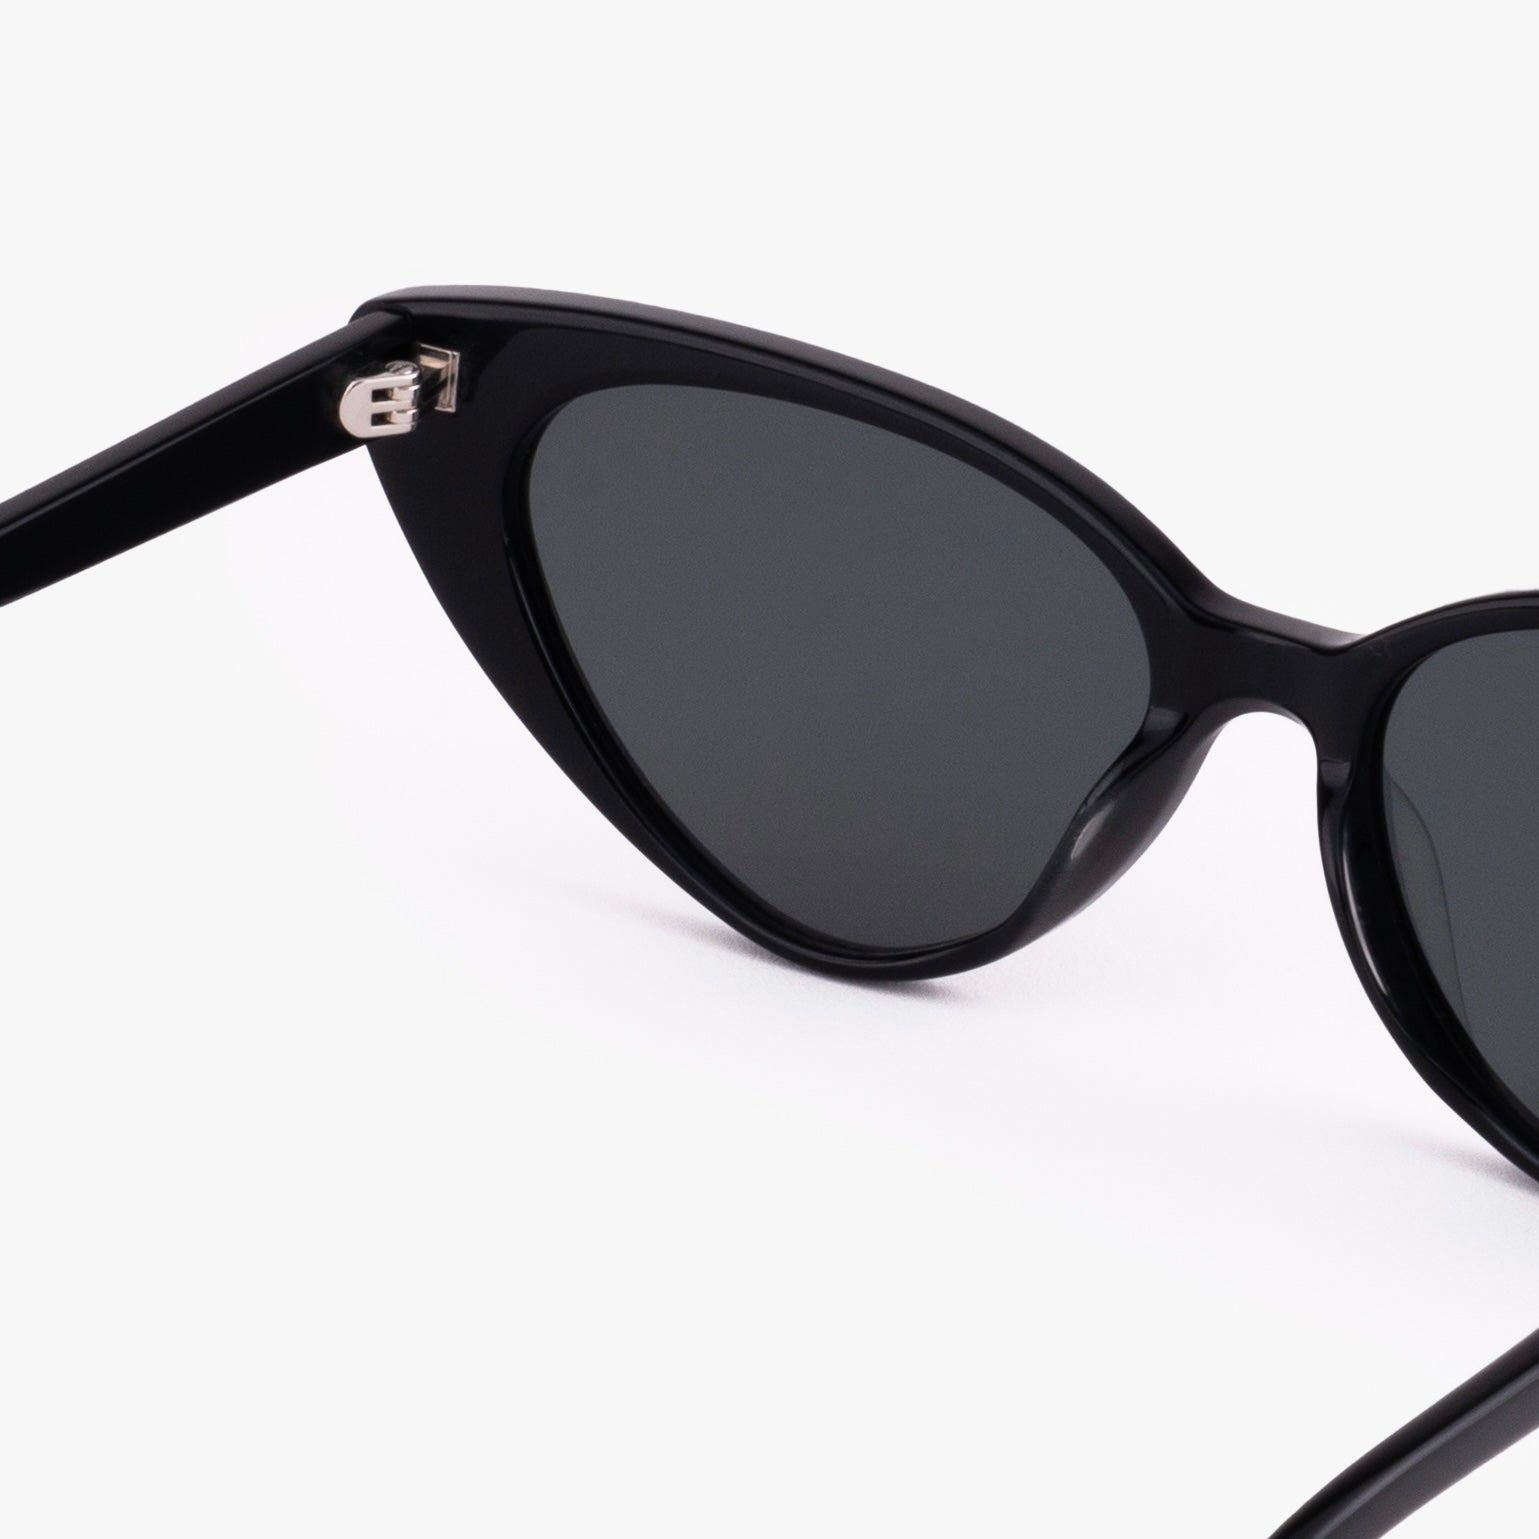 Monroe Sunglasses Black Retro Cat Eye Frame